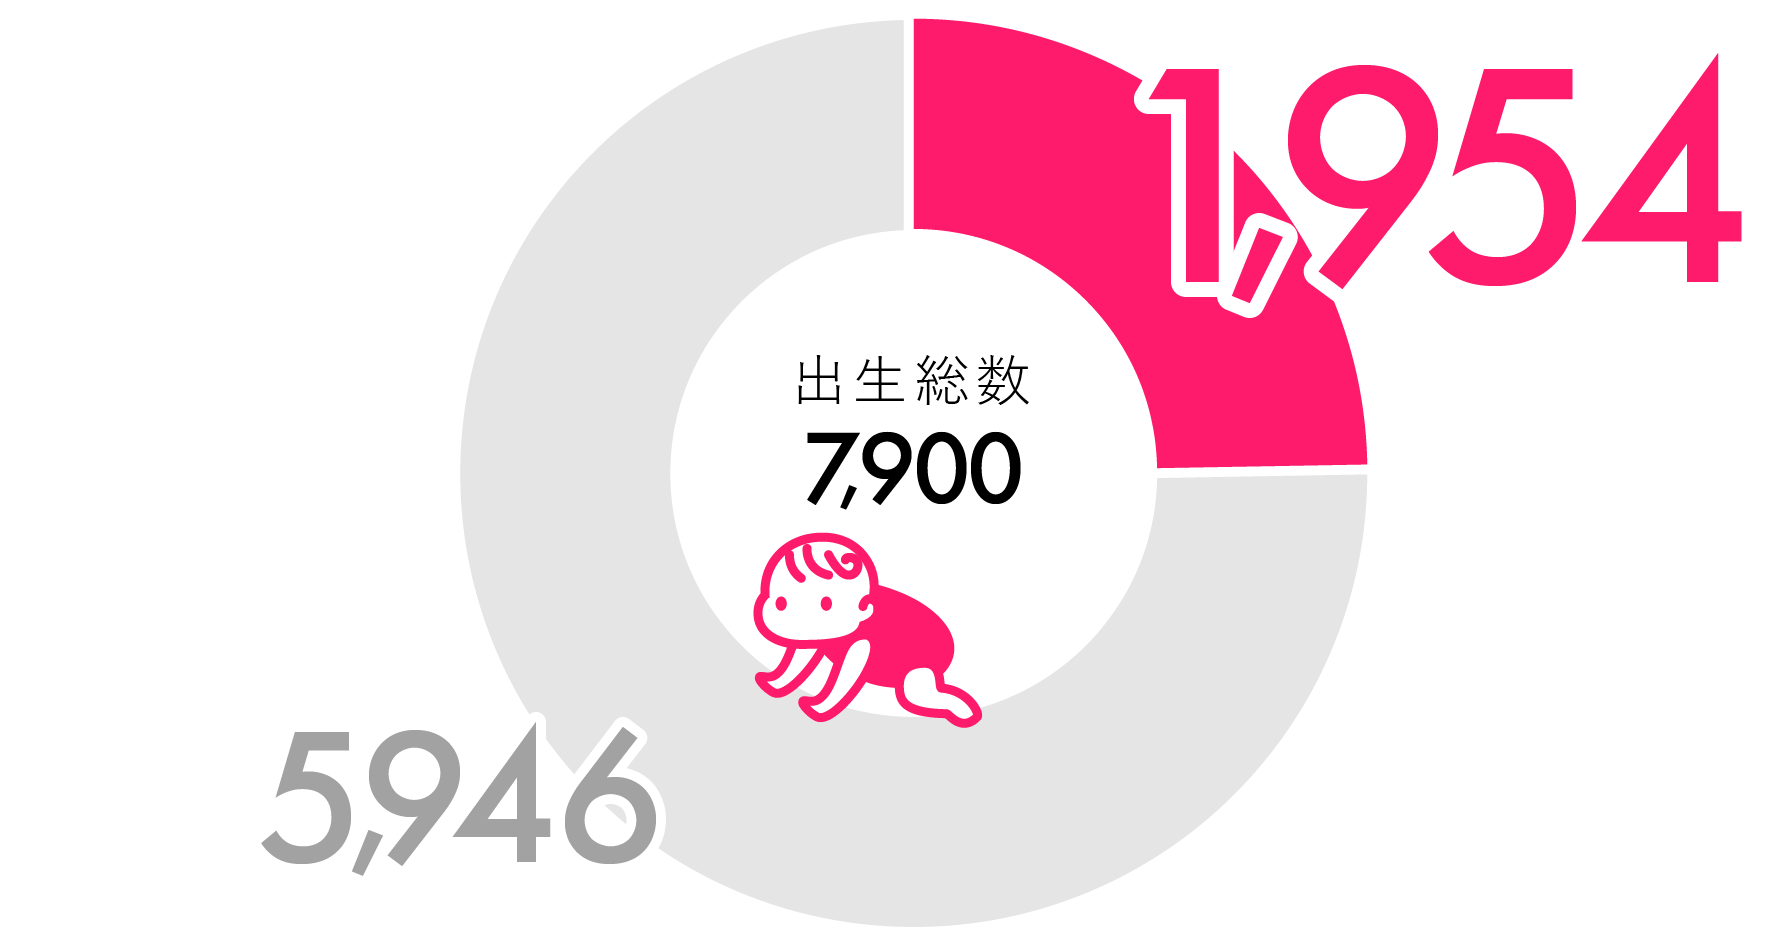 京都市内の年間出生数に占める割合